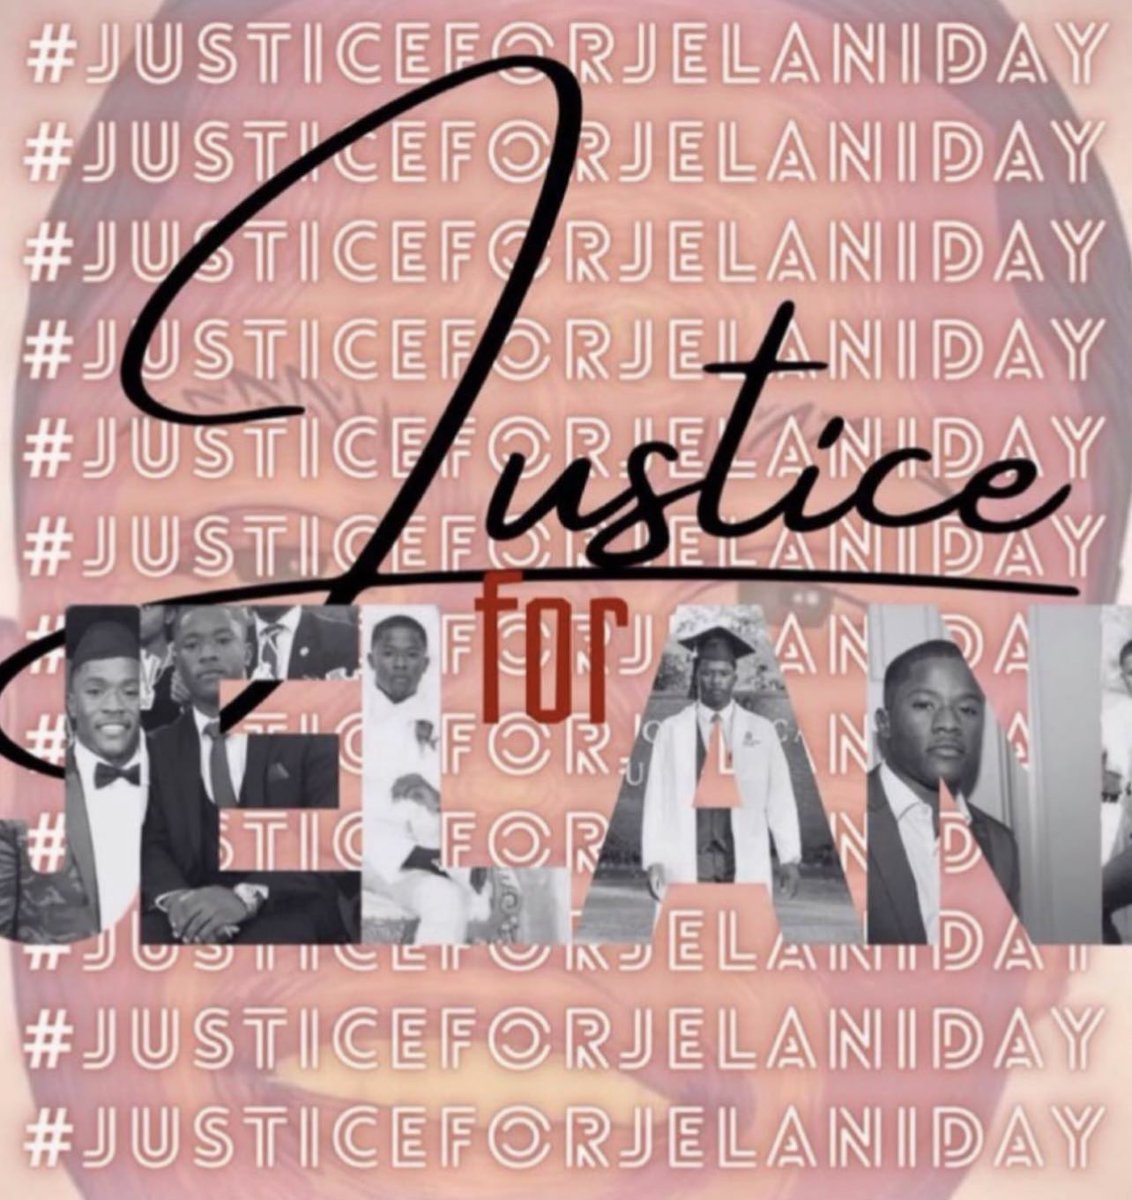 #JUSTICEFORJELANIDAY 
#HISLIFEMATTERS 
#DEMANDJUSTICE